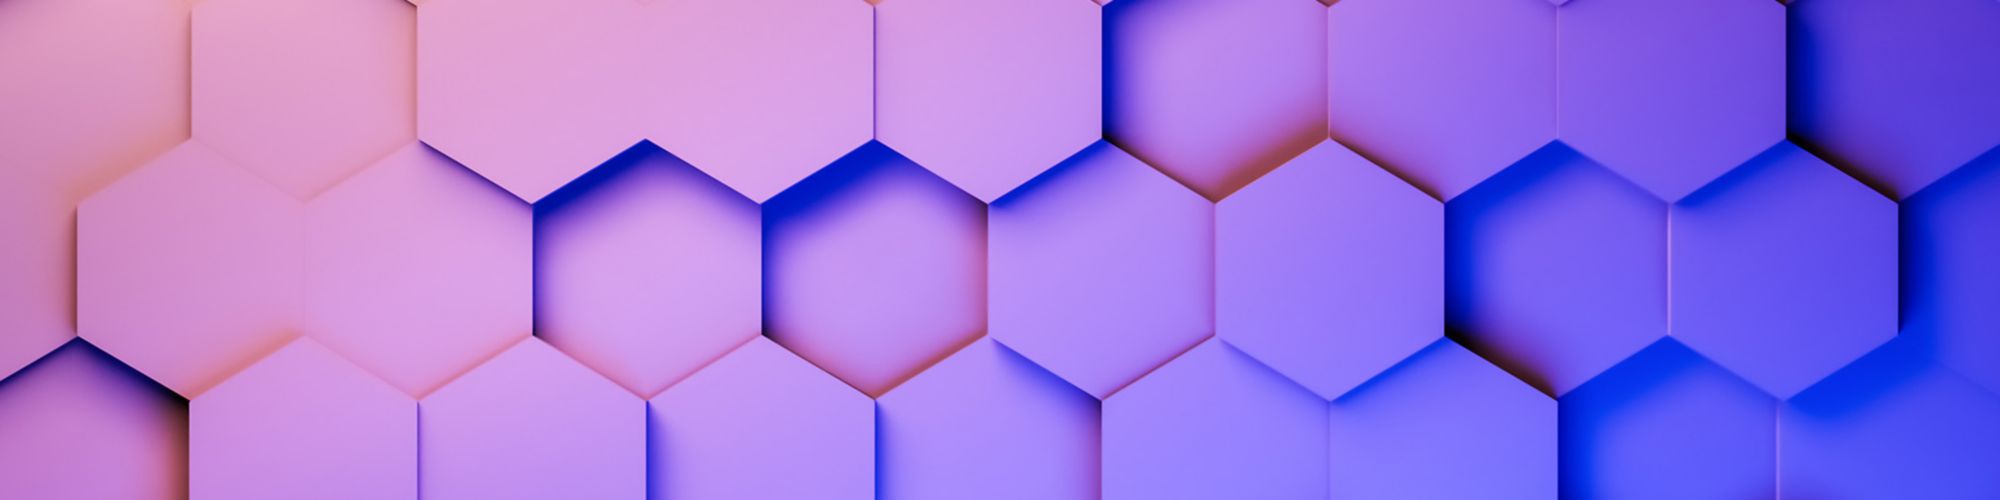 pink-blue-gradient-hexagon